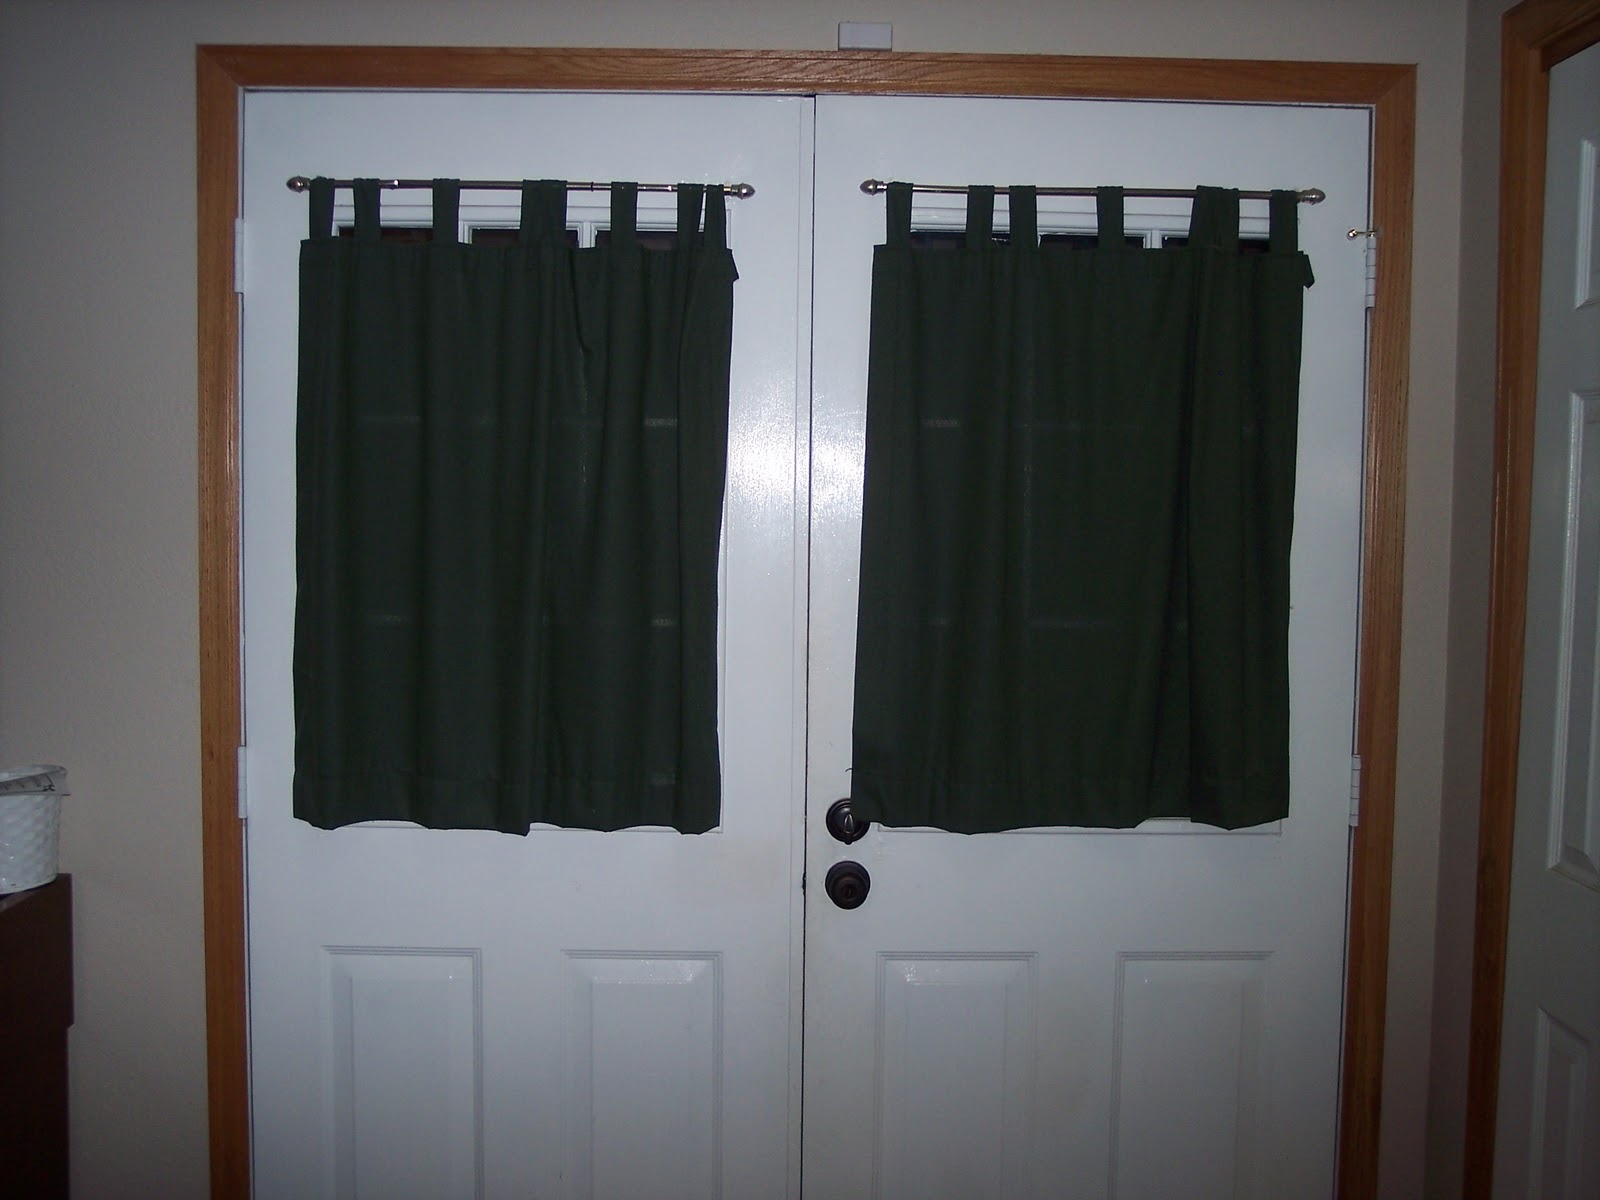 Curtain For Closet Door Small Blinds for Door Windows